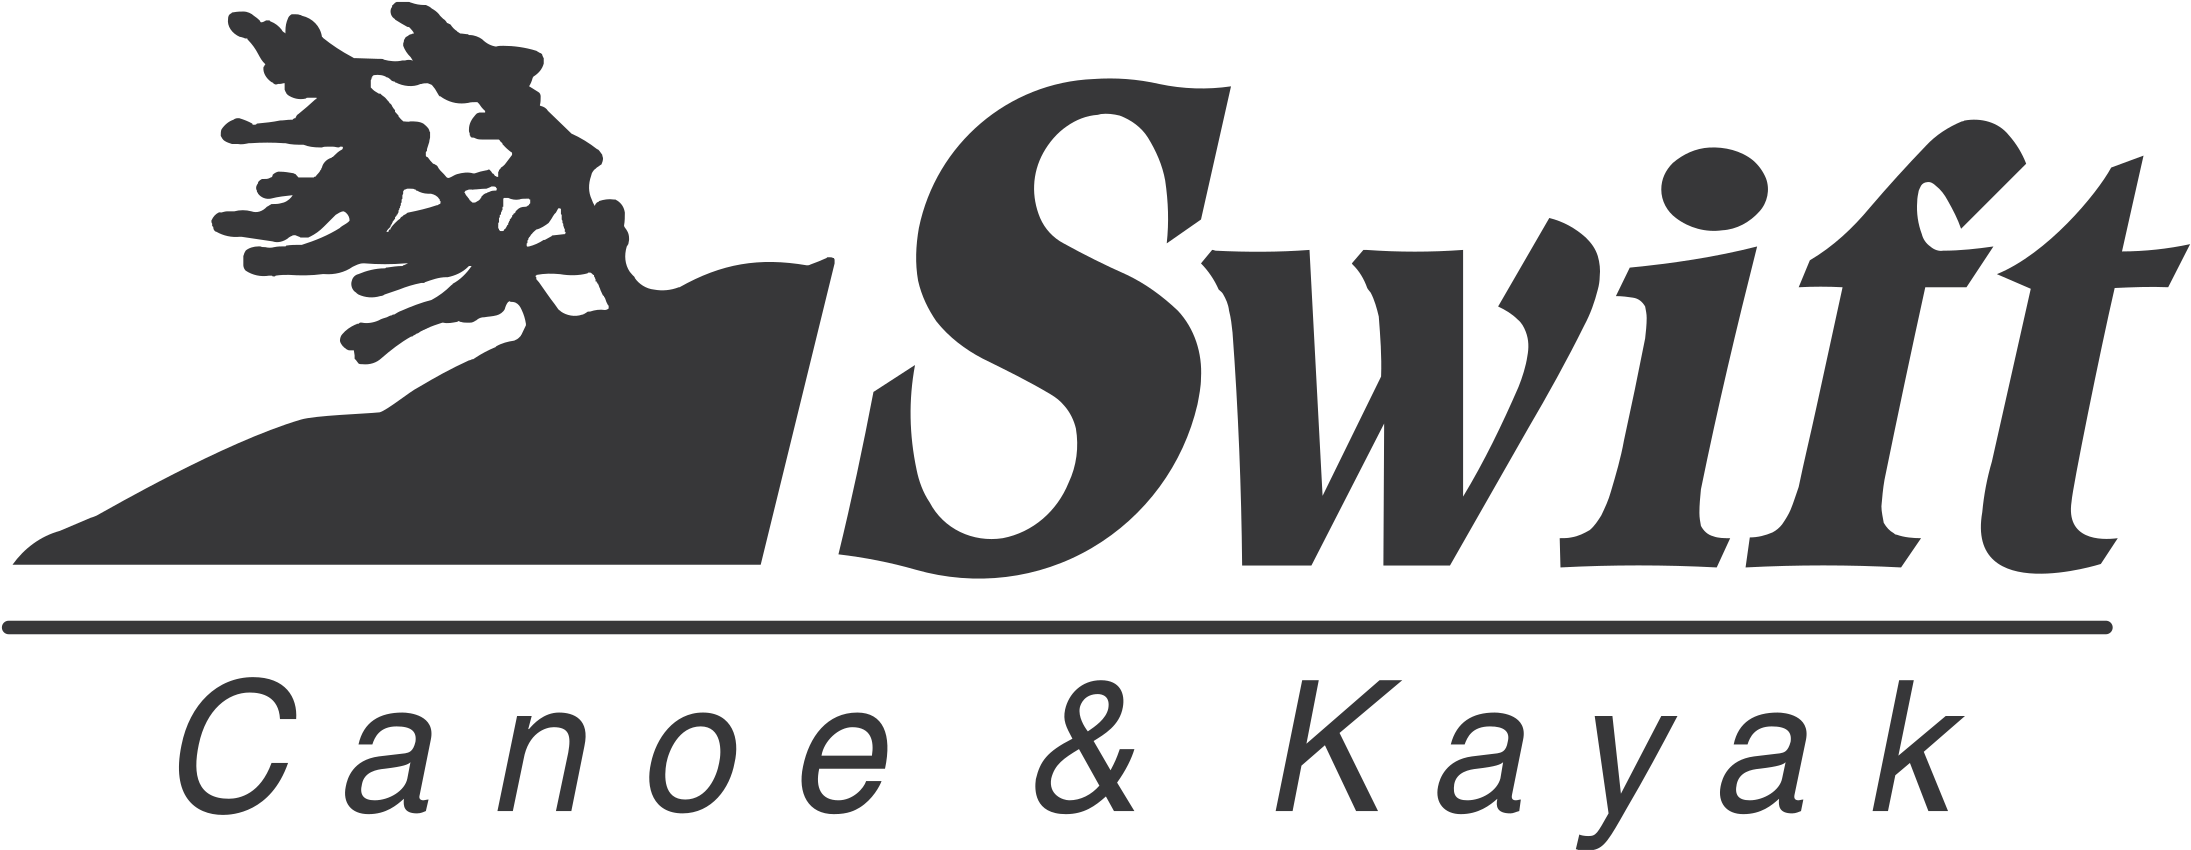 Swift Canoe & Kayak Logo Png Transparent - Wackler Holding Clipart (2400x2400), Png Download